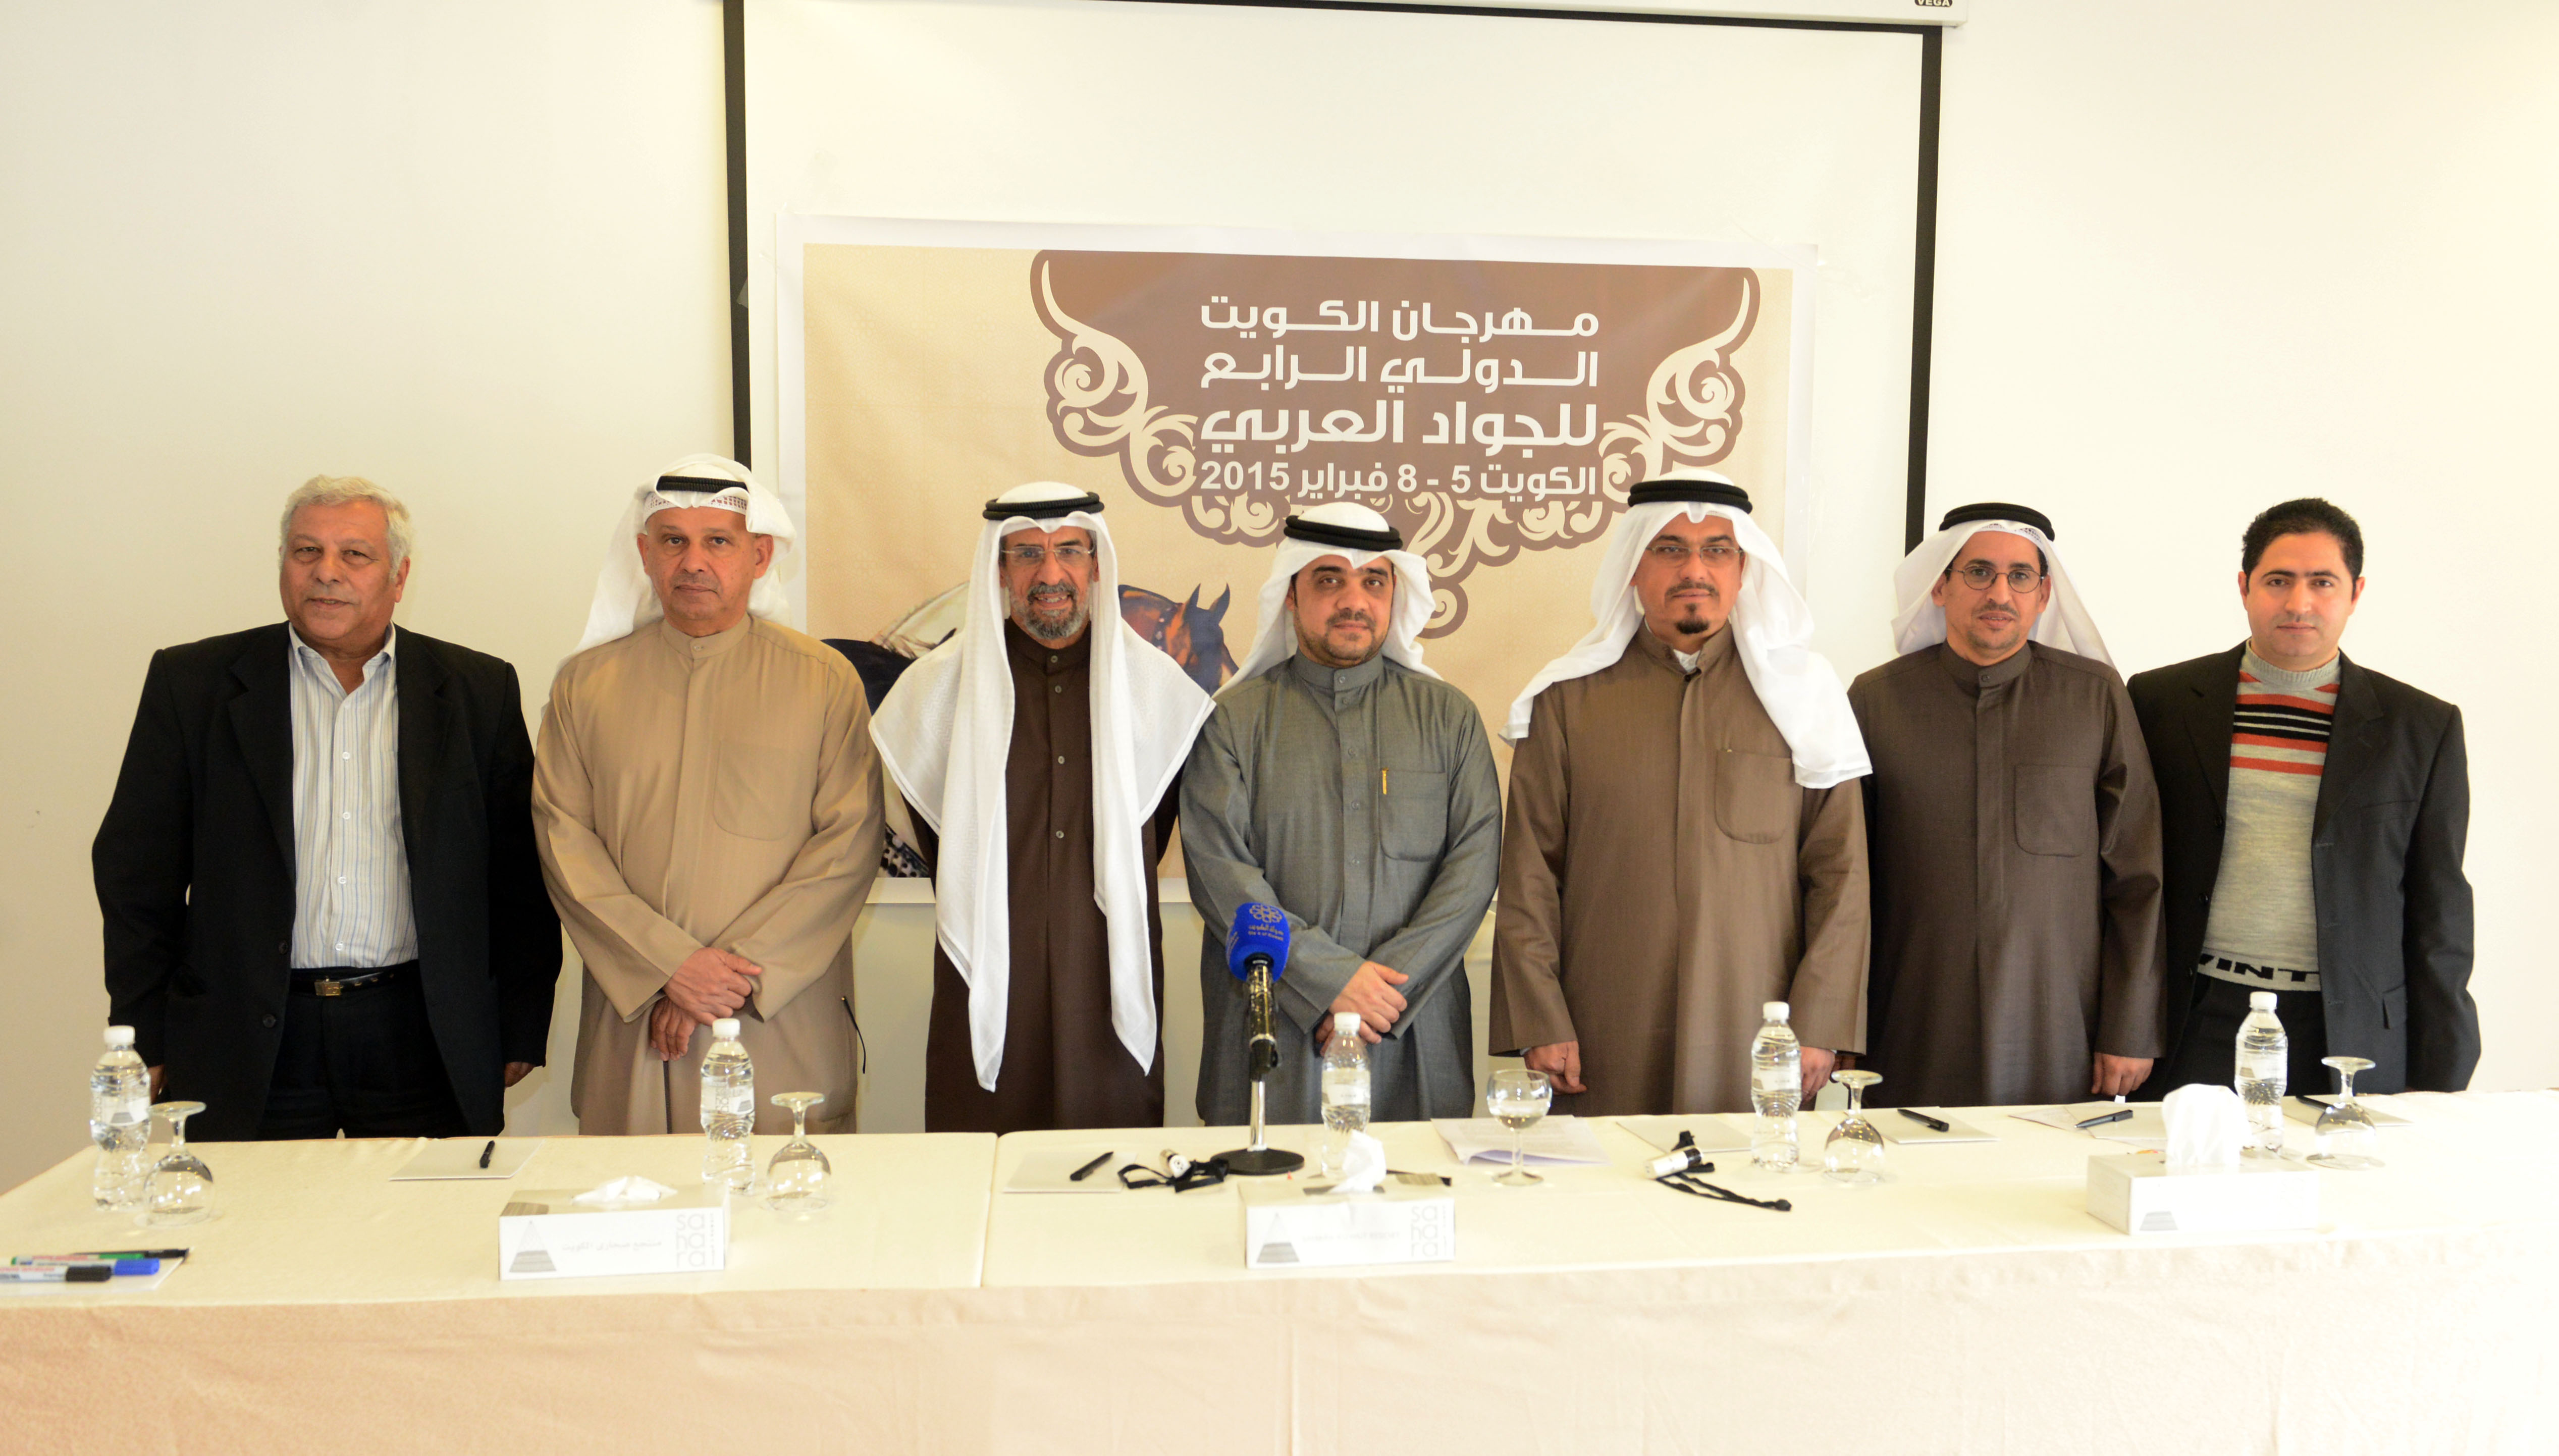 اللجنة المنظمة لمهرجان الكويت الدولي الرابع للجواد العربي